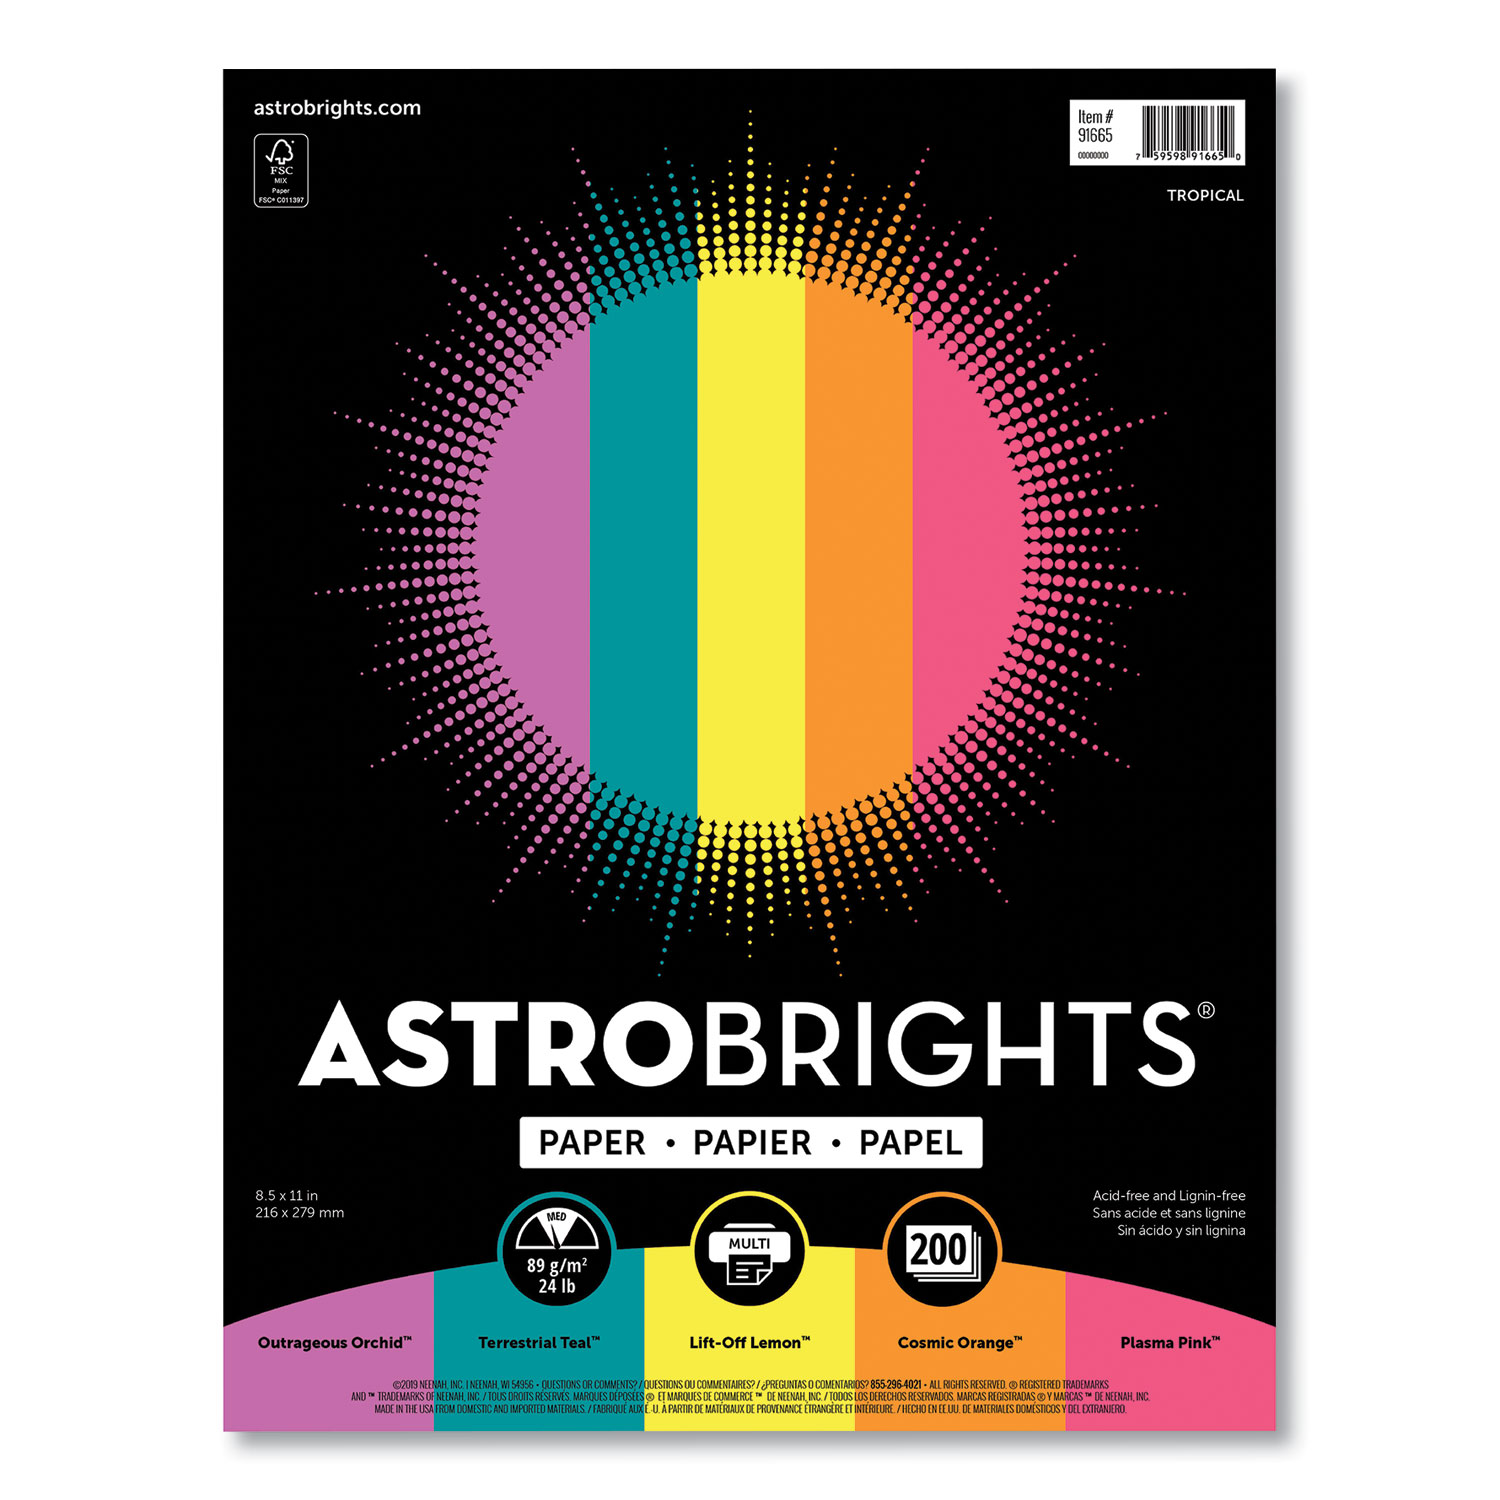 Astrobrights® Color Paper - Tropical Assortment, 24 lb, 8.5 x 11, Assorted Tropical Colors, 500/Ream